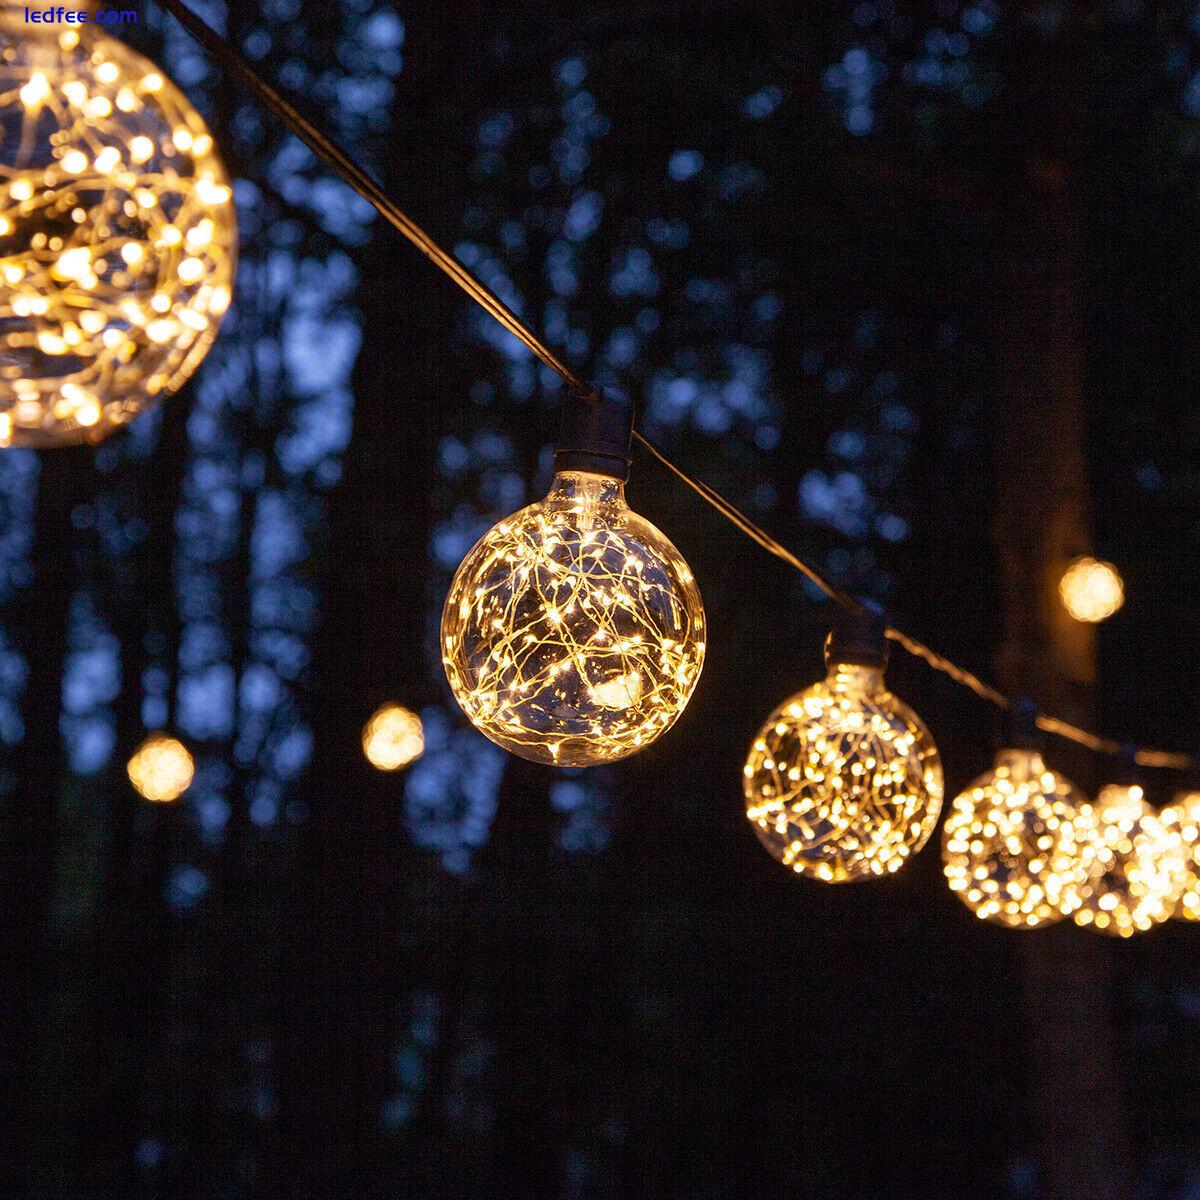 LED Fairy Light Bulb Multiple Color Home Patio Garden Globe Party Lamp Bulbs 0 